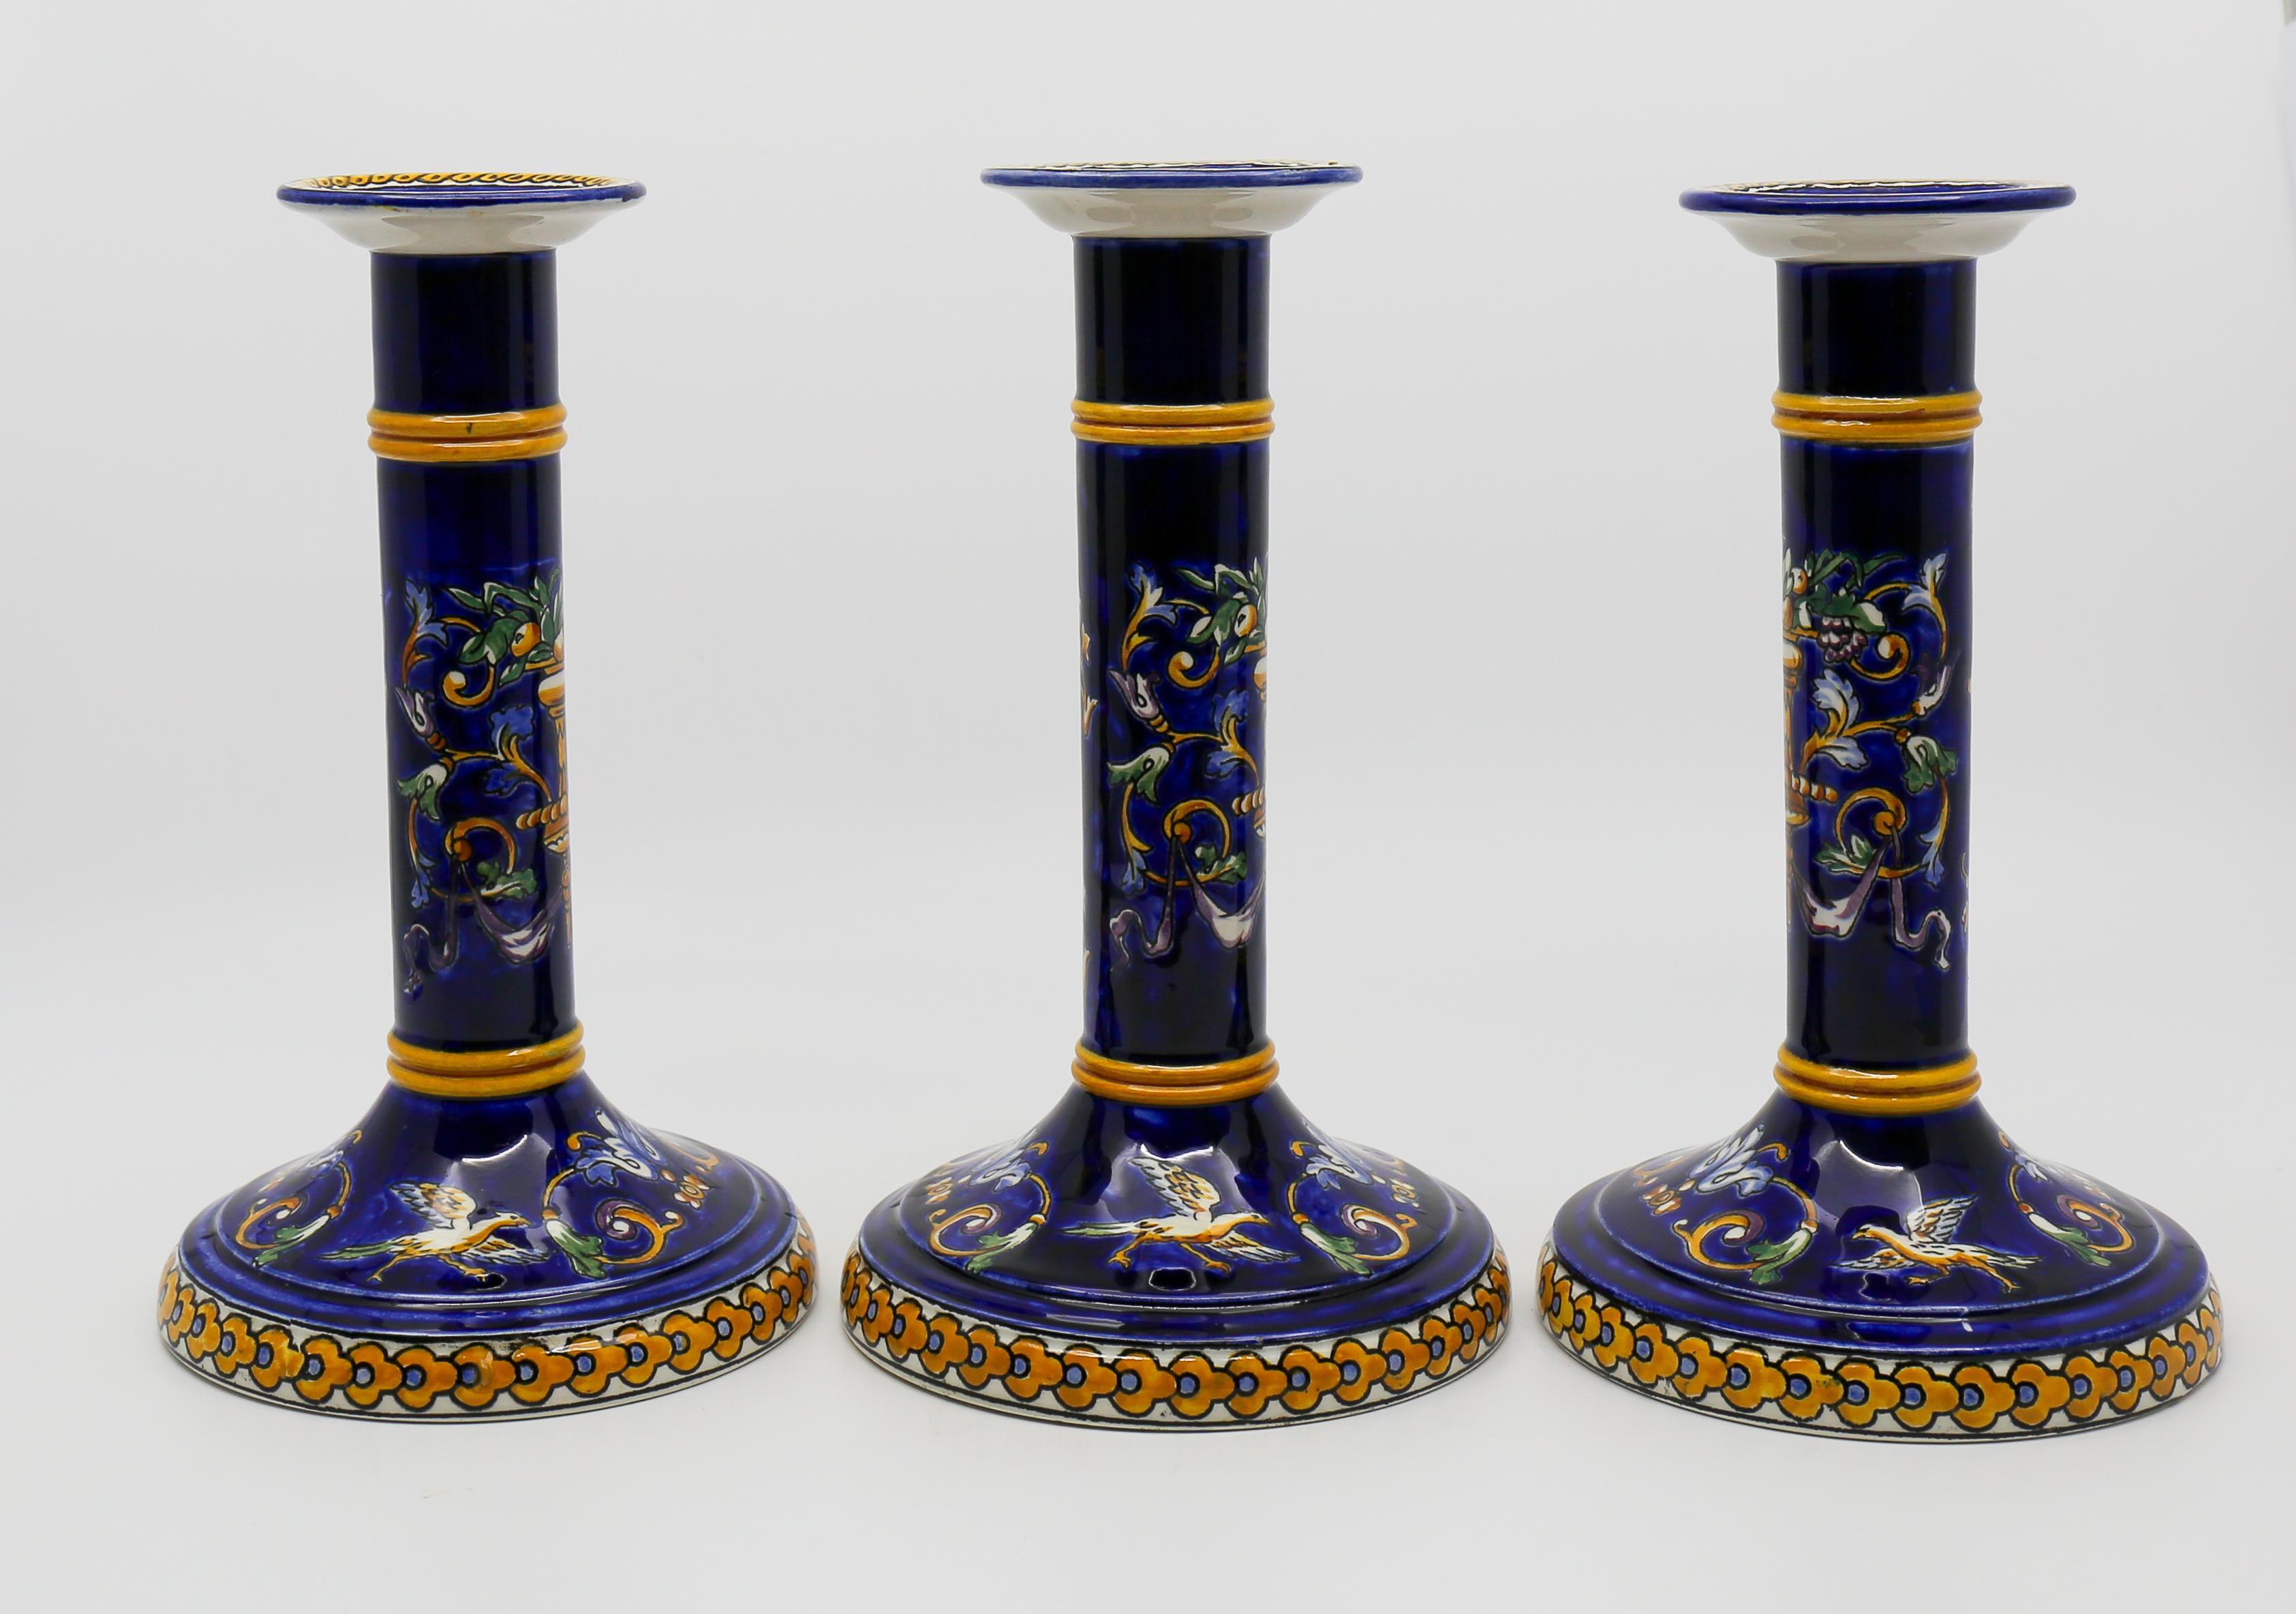 Drei sehr schöne Gien Renaissance Modell Kerzenständer in seiner Nacht blau Version. 
Der Sockel ist für einen Drahtdurchlass ausgeschnitten. Wahrscheinlich eine Anpassung für den Einbau einer Lampe. Abgesehen von diesem kleinen Schnitt, kein Defekt.